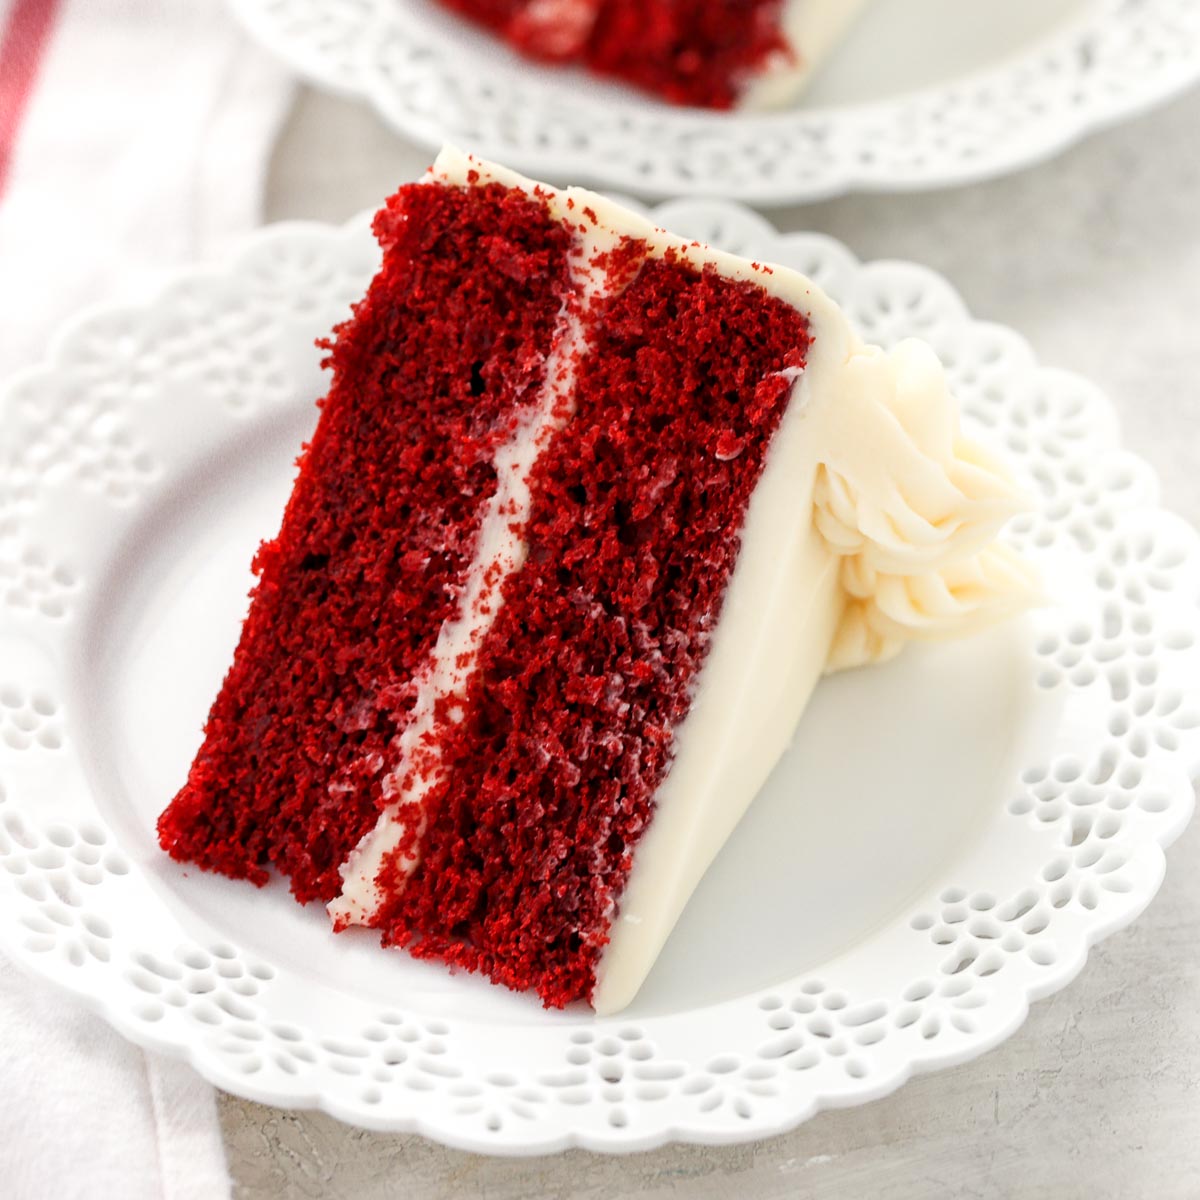 The BEST Red Velvet Cake